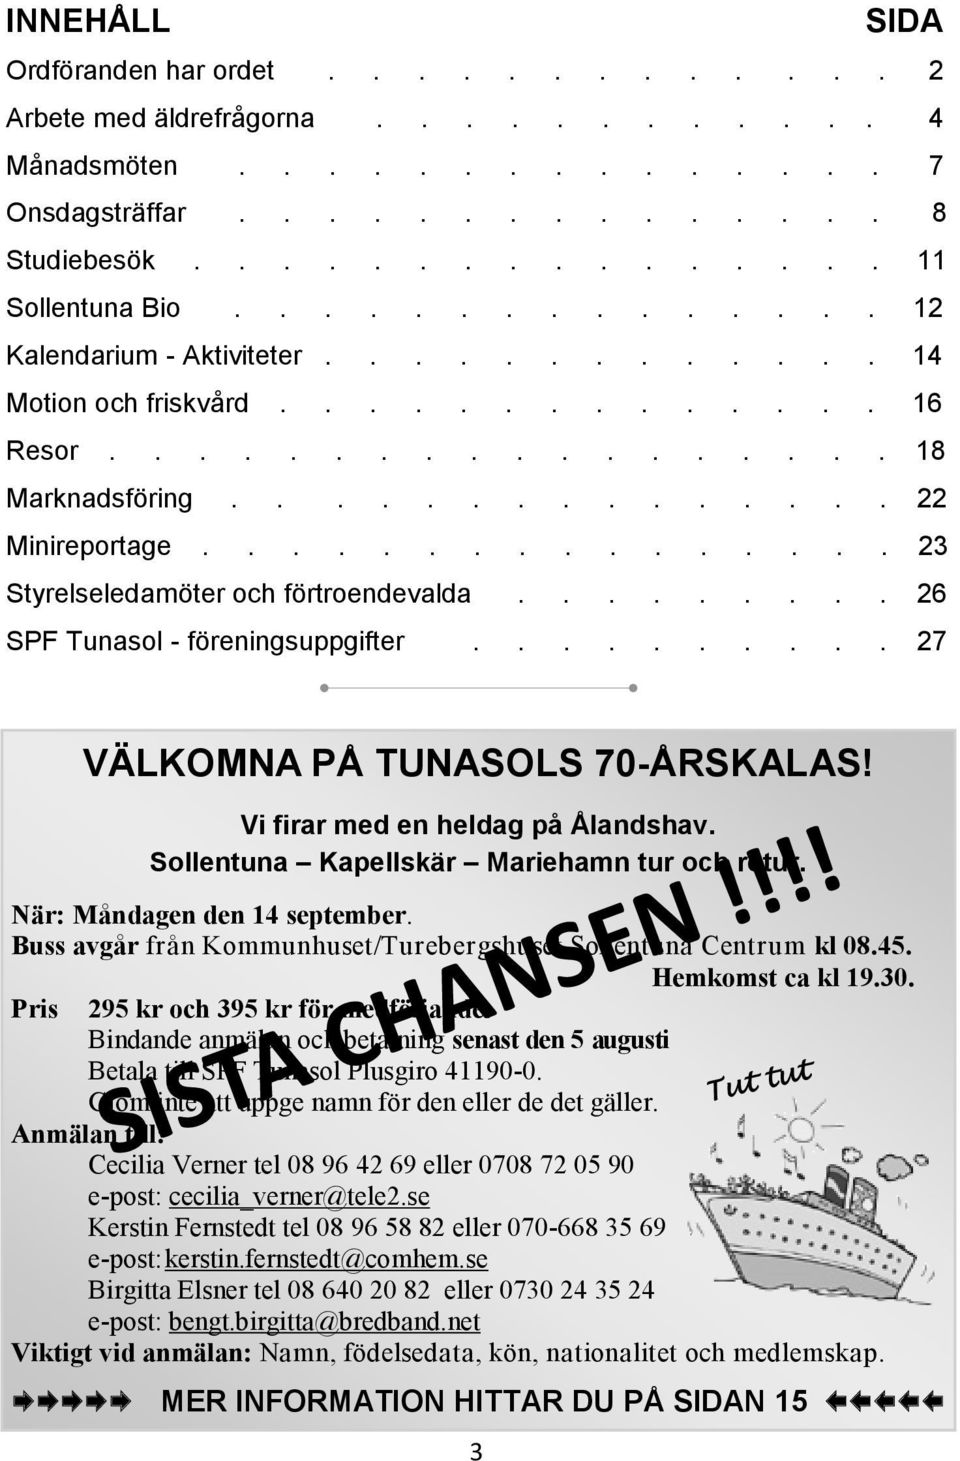 ............... 23 Styrelseledamöter och förtroendevalda......... 26 SPF Tunasol - föreningsuppgifter.......... 27 VÄLKOMNA PÅ TUNASOLS 70-ÅRSKALAS! Vi firar med en heldag på Ålandshav.